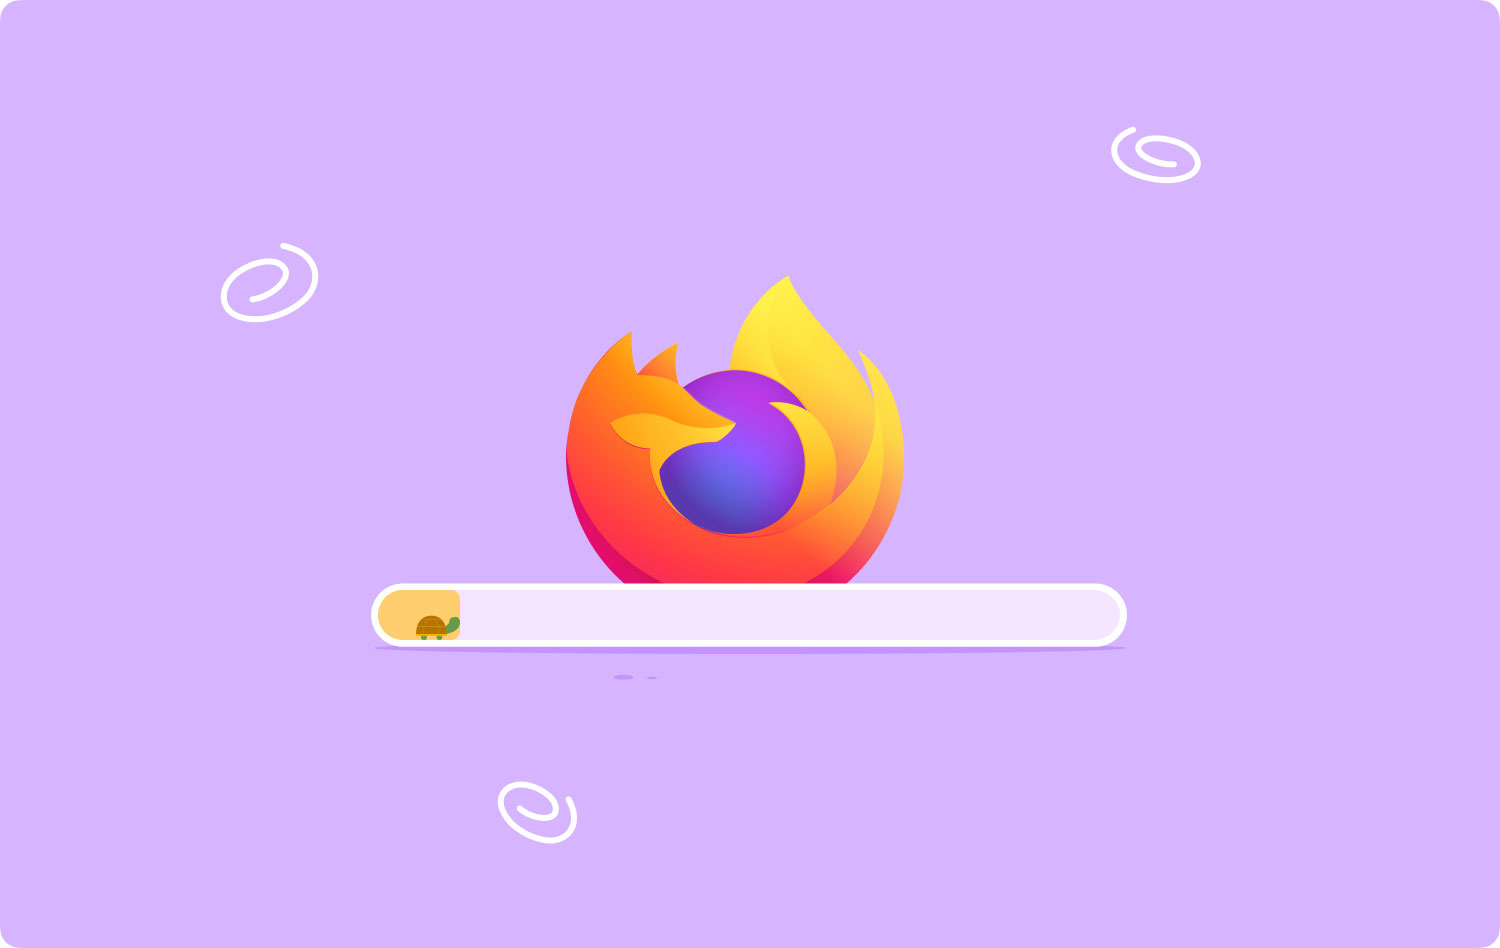 Warum ist Firefox so langsam?